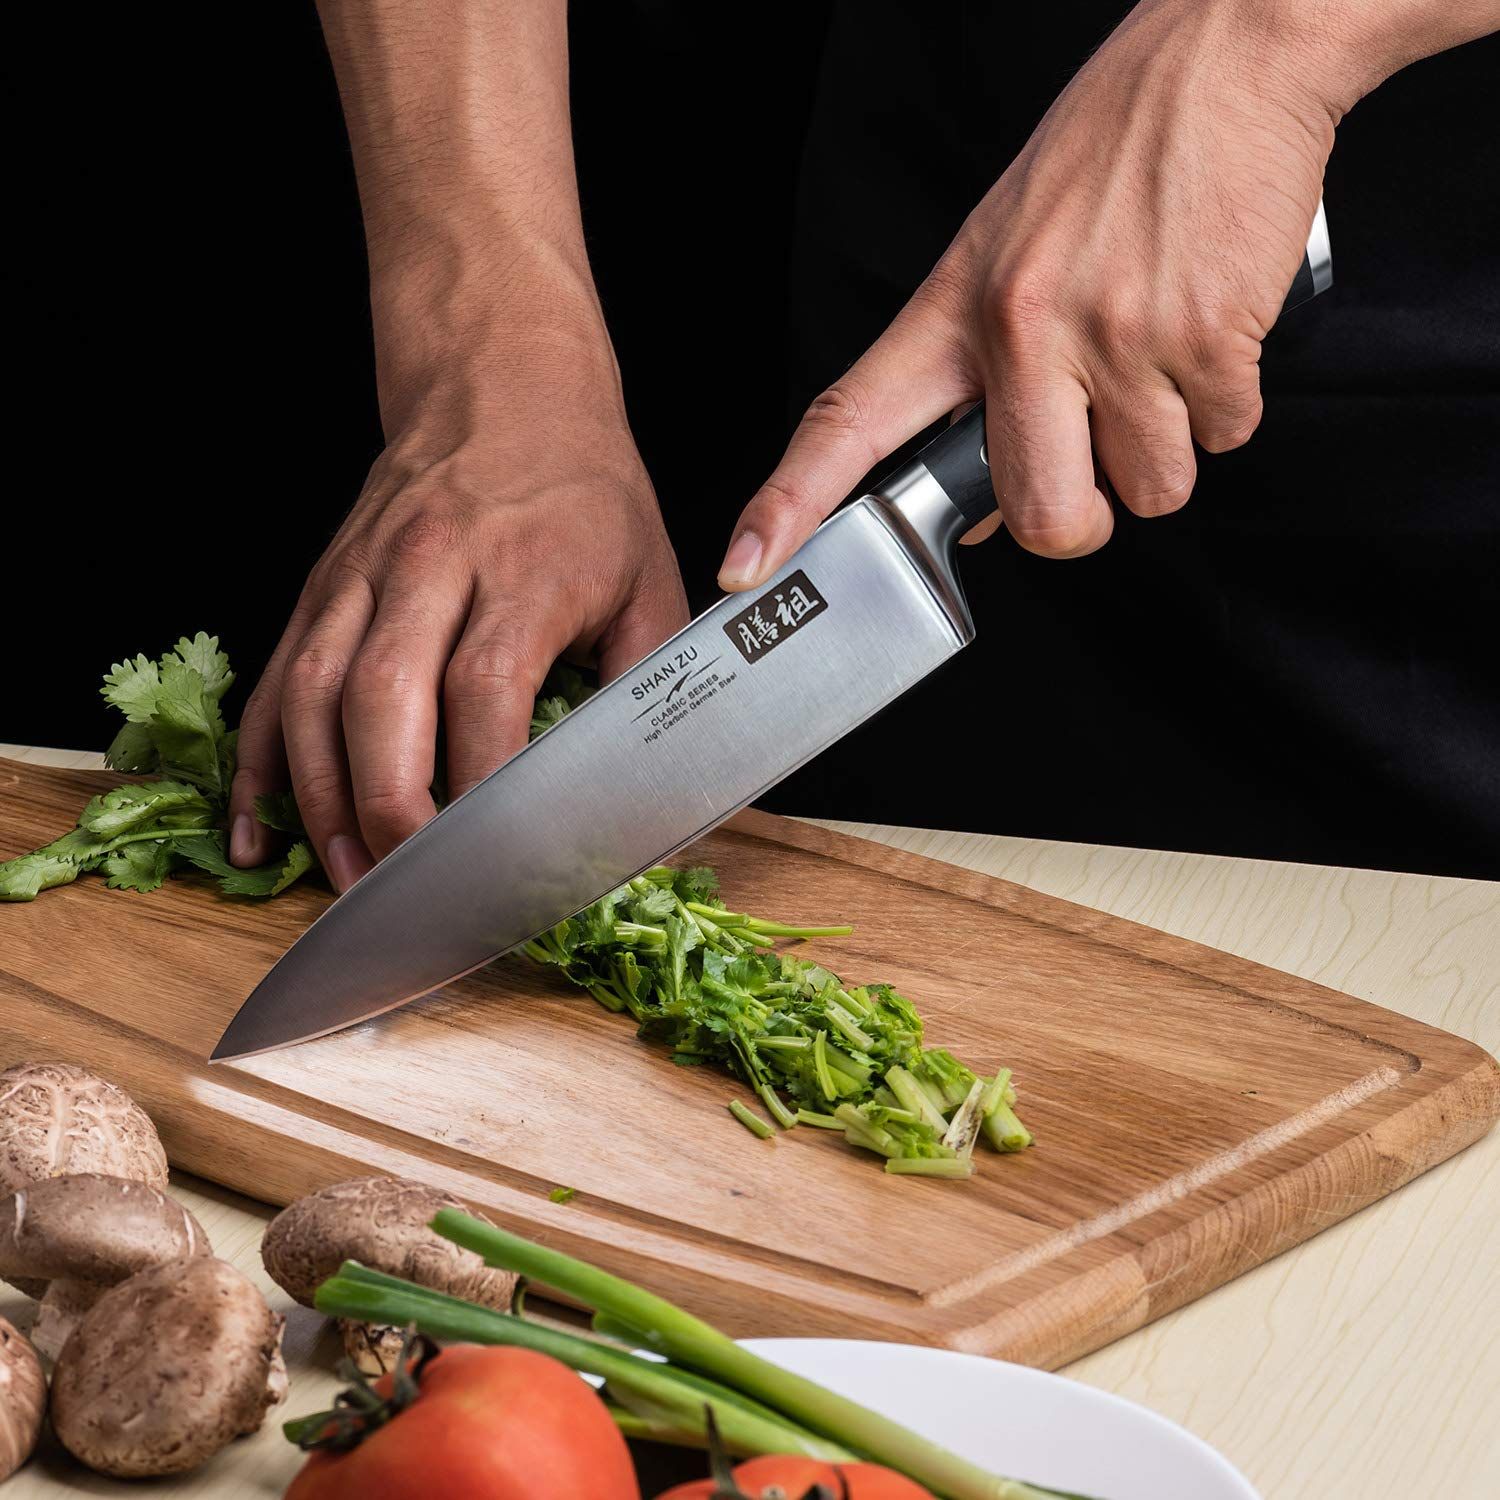 Couteaux de cuisine : les meilleurs modèles pour professionnels et amateurs